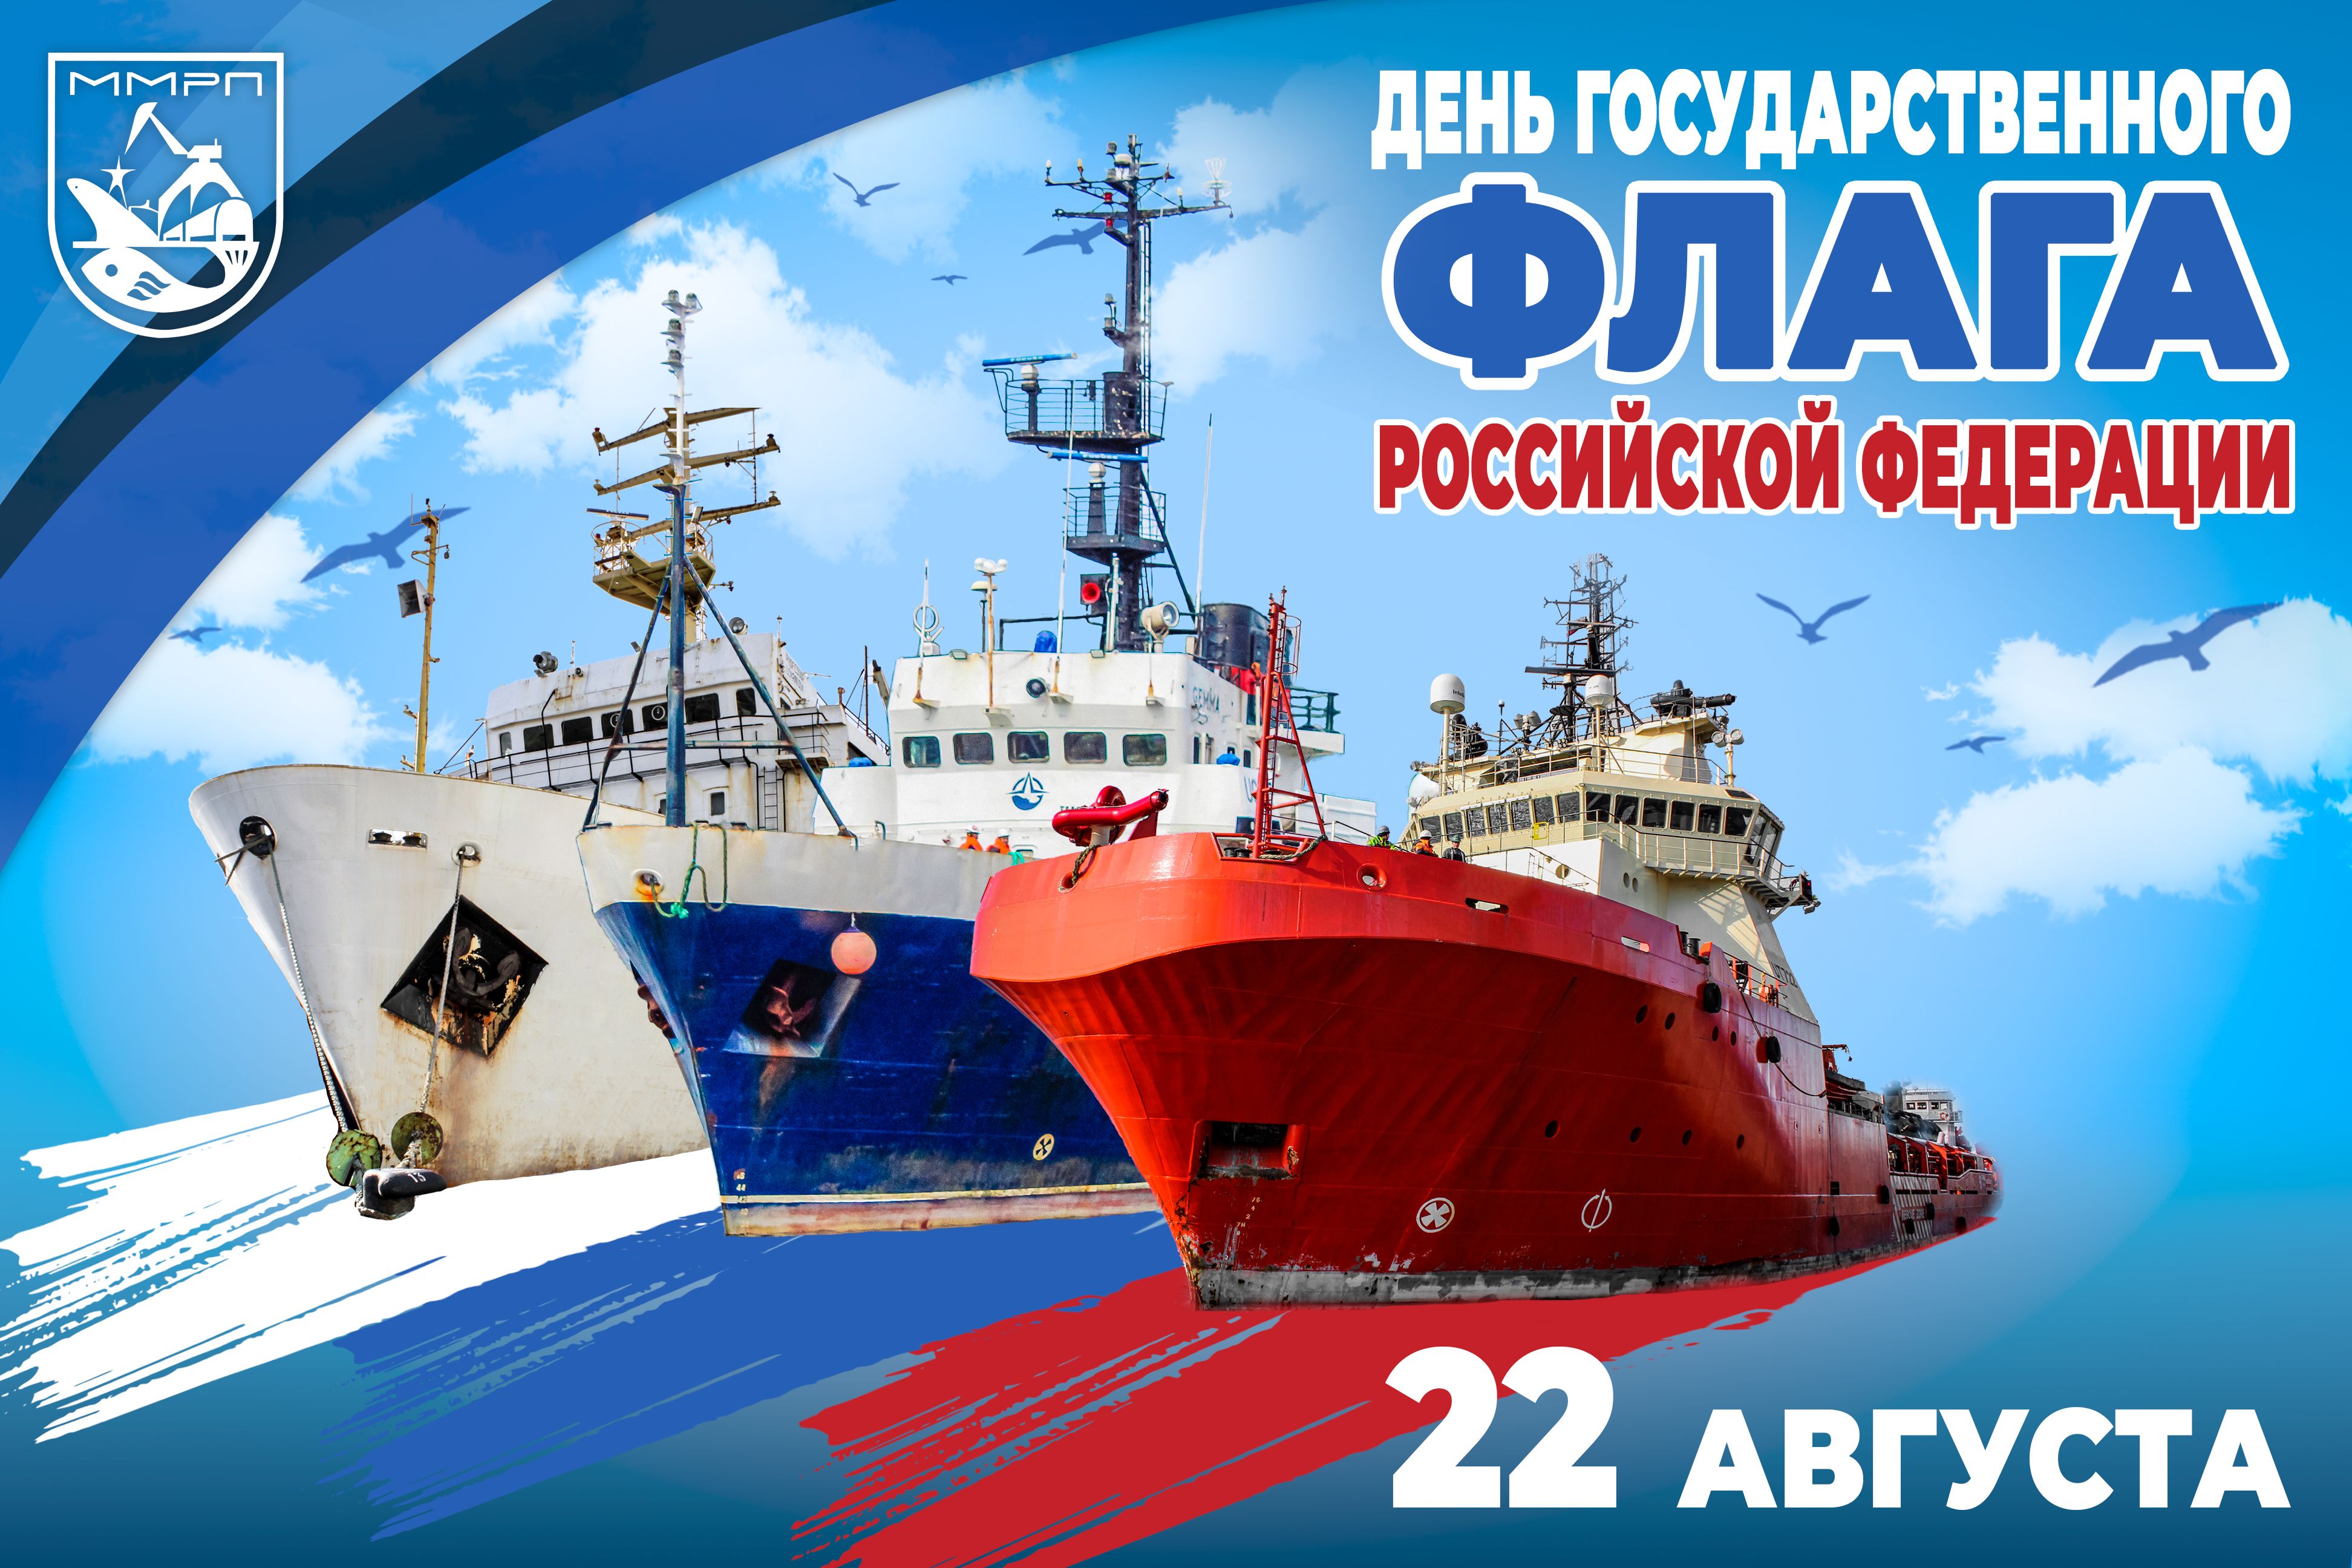 Мурманский морской рыбный порт поздравляет с Днем Государственного флага Российской Федерации